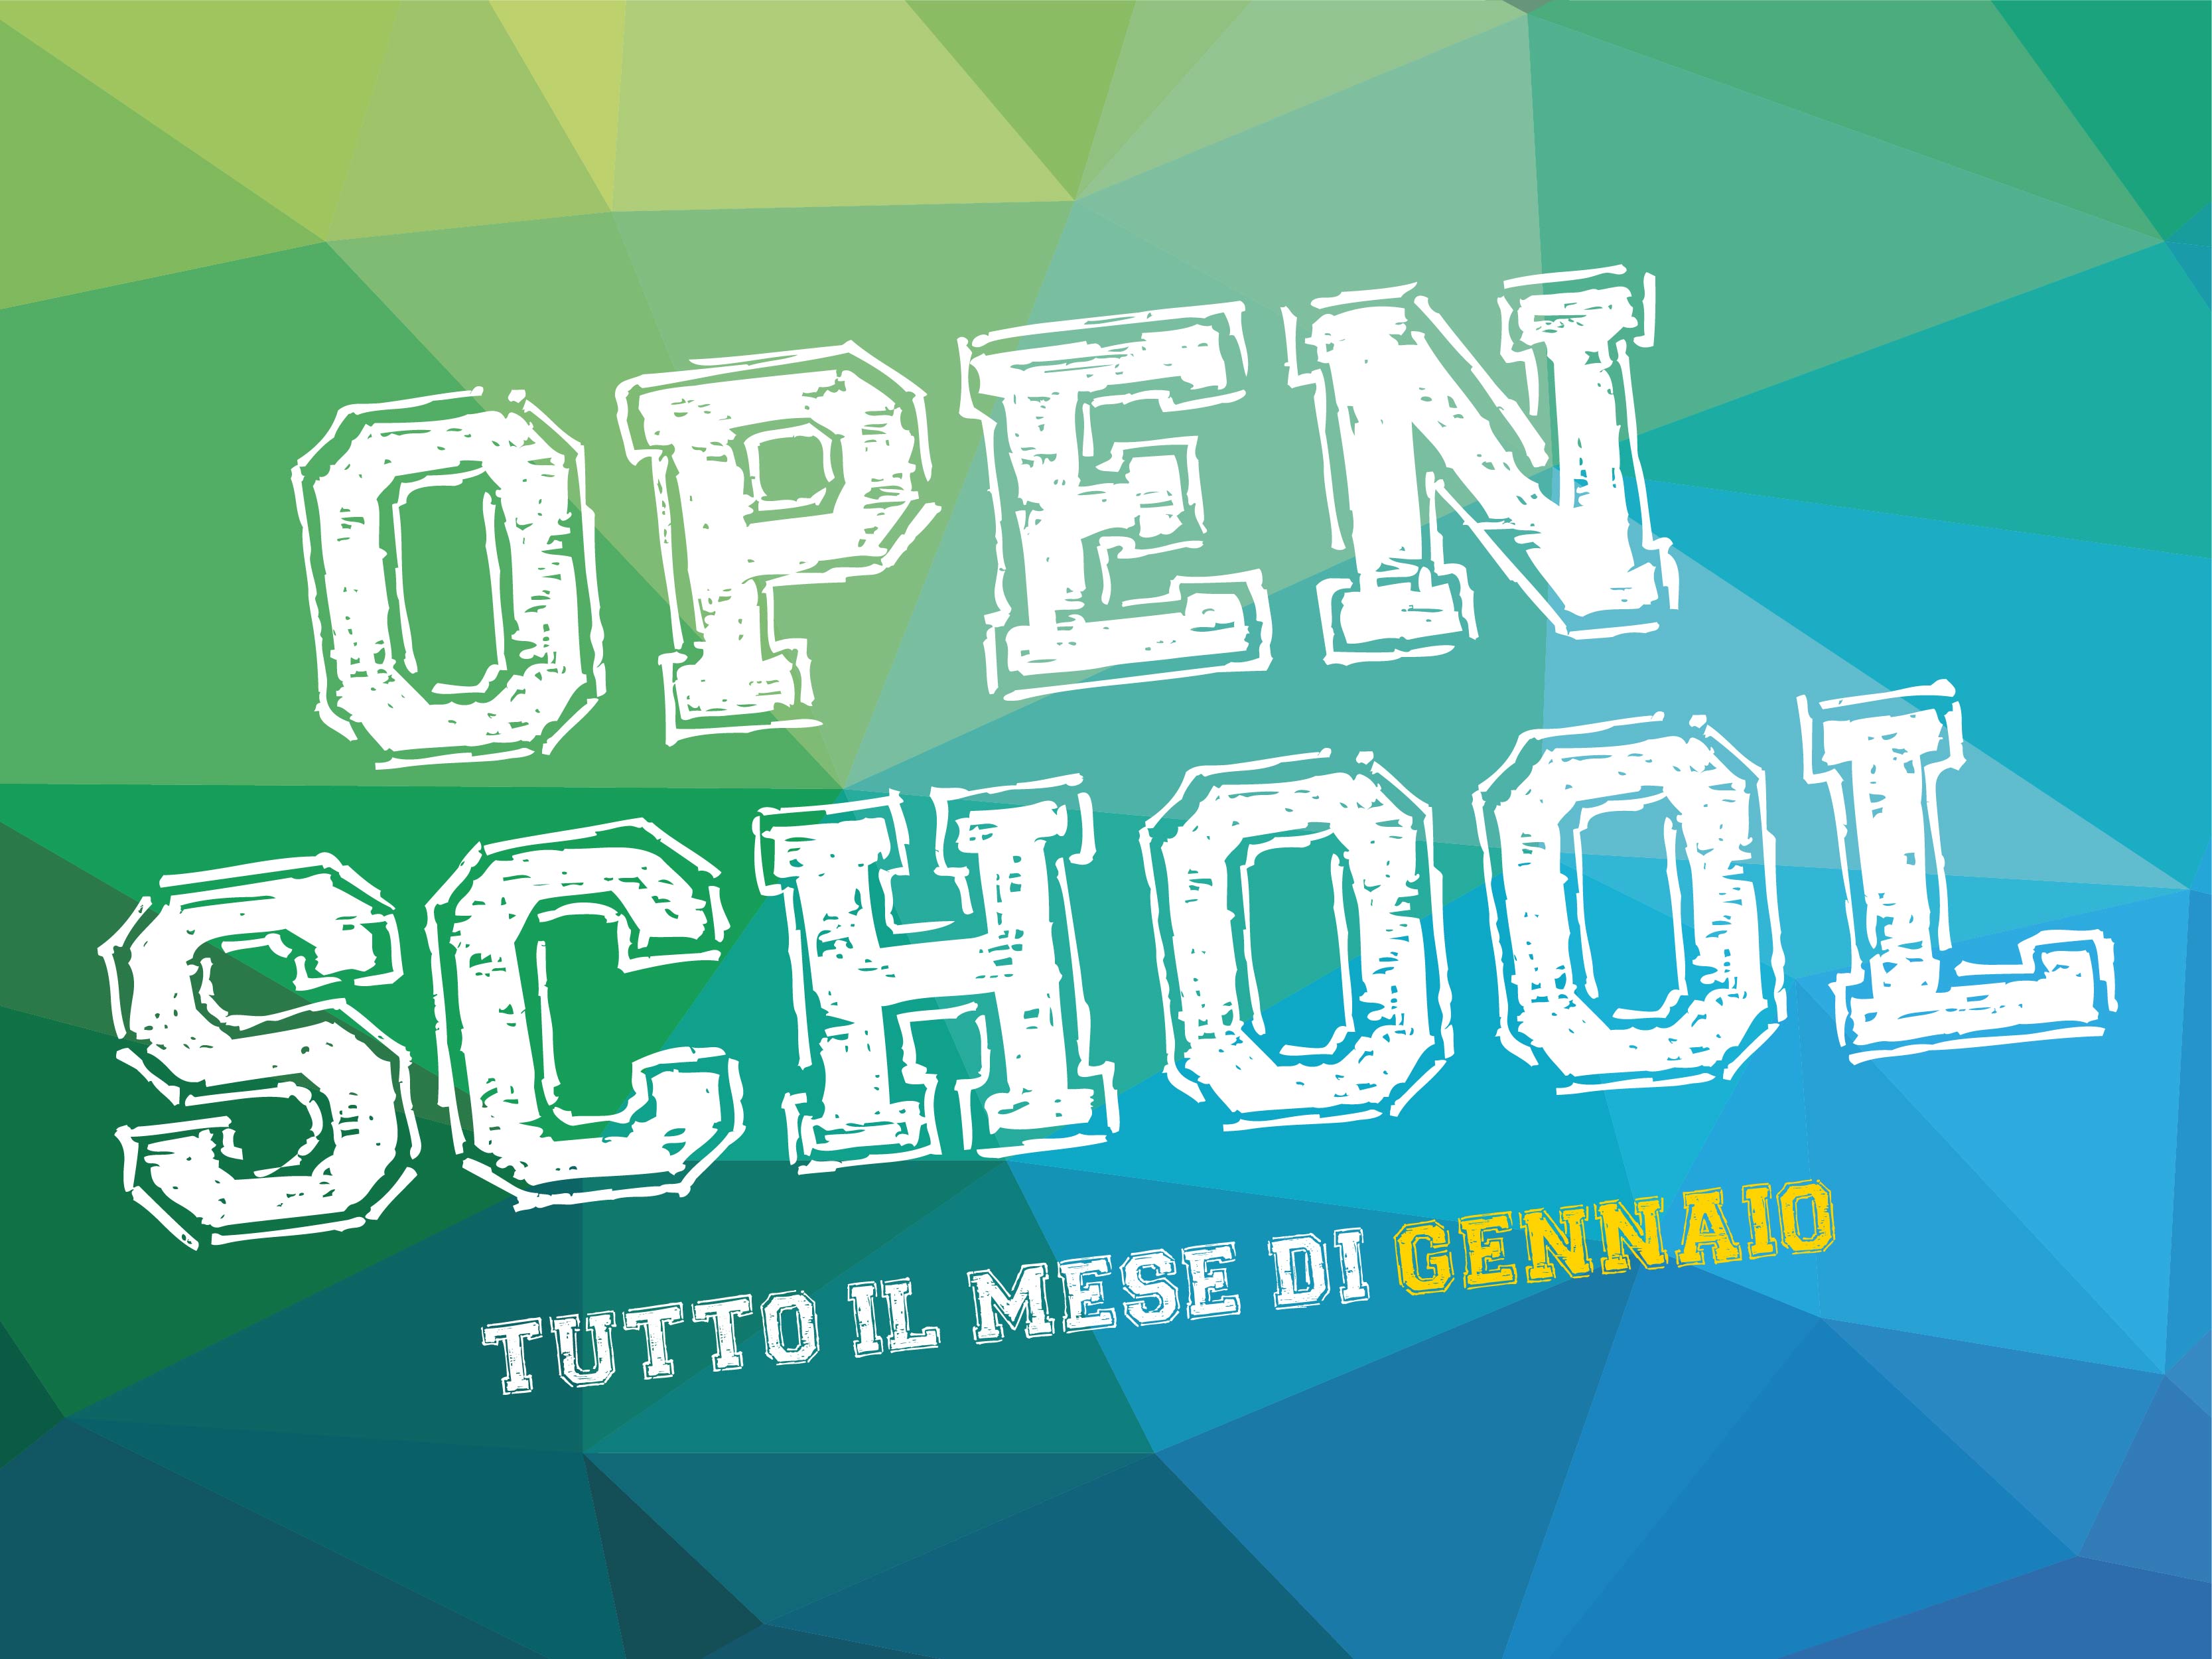 Open School